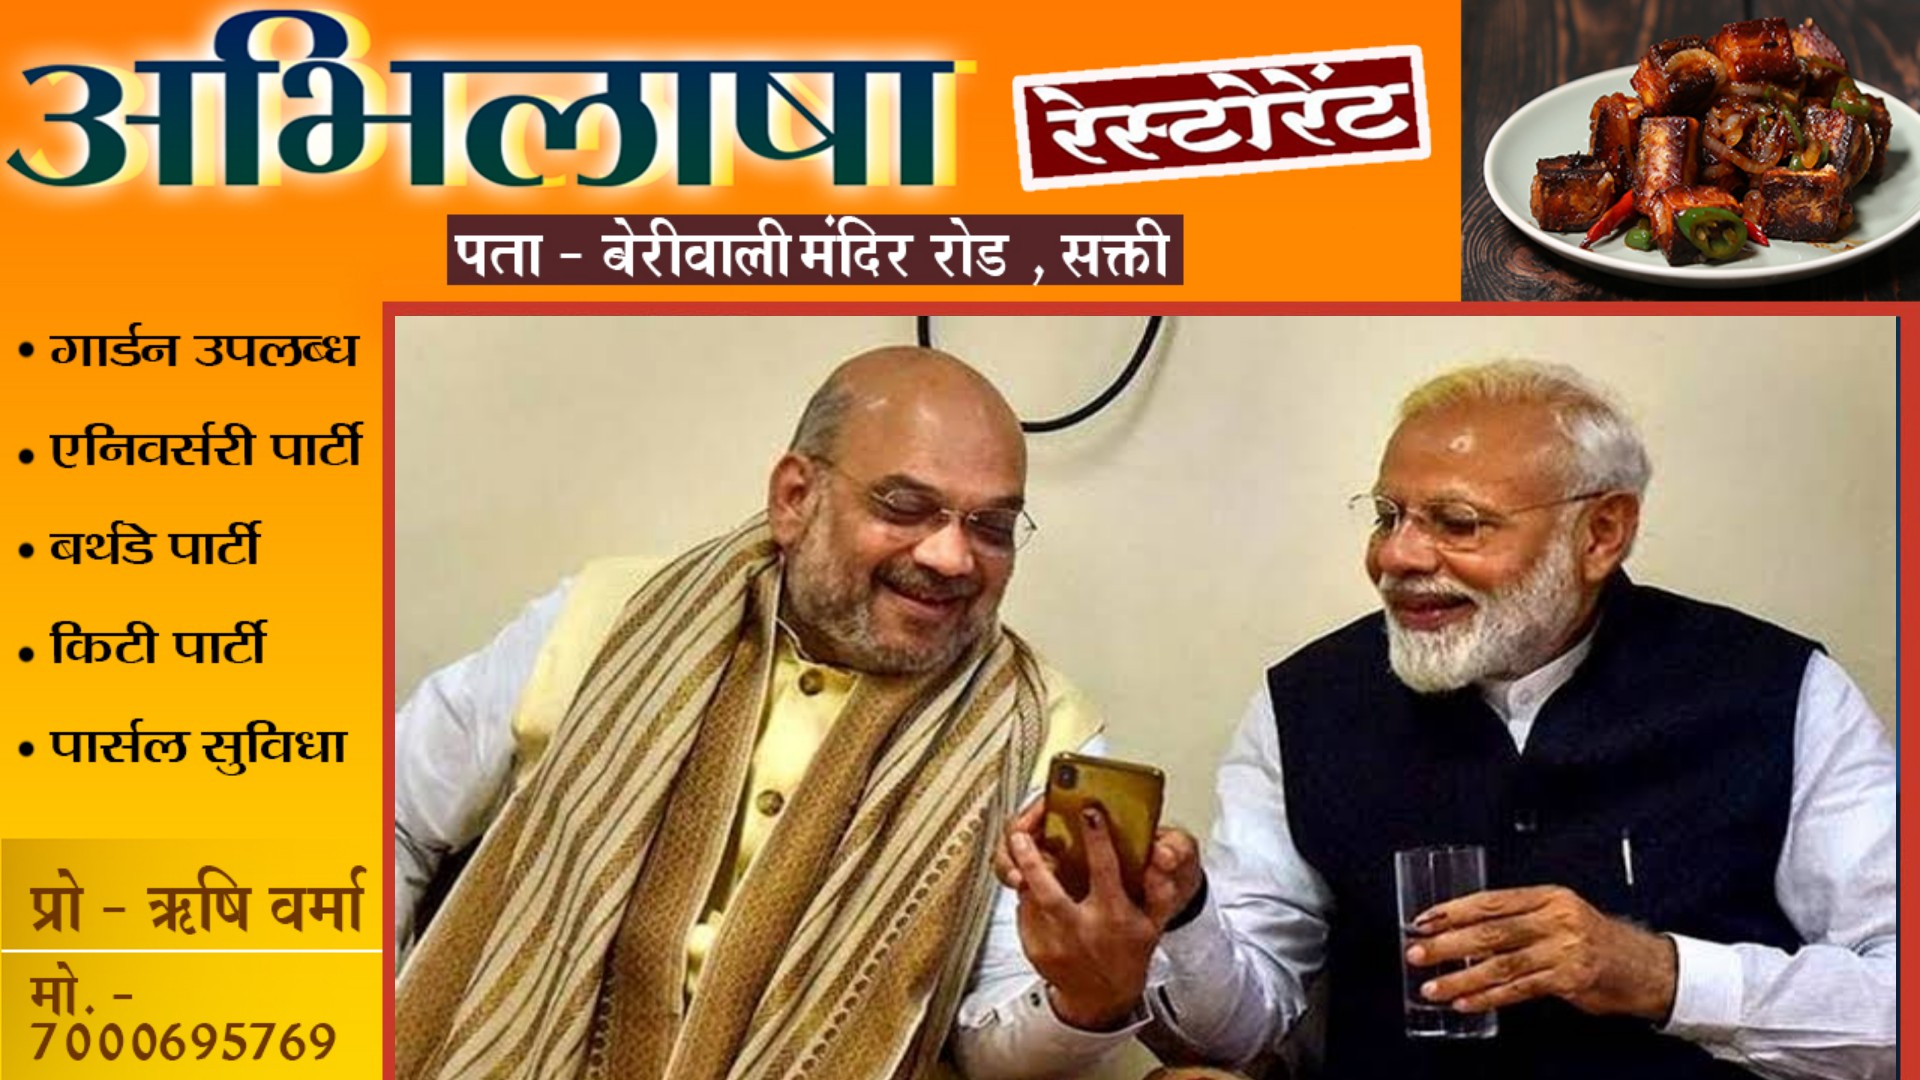 BJP ने लोकसभा चुनाव के लिए पहली लिस्ट की जारी , जाने कँहा से चुनाव लड़ेंगे PM मोदी और शाह